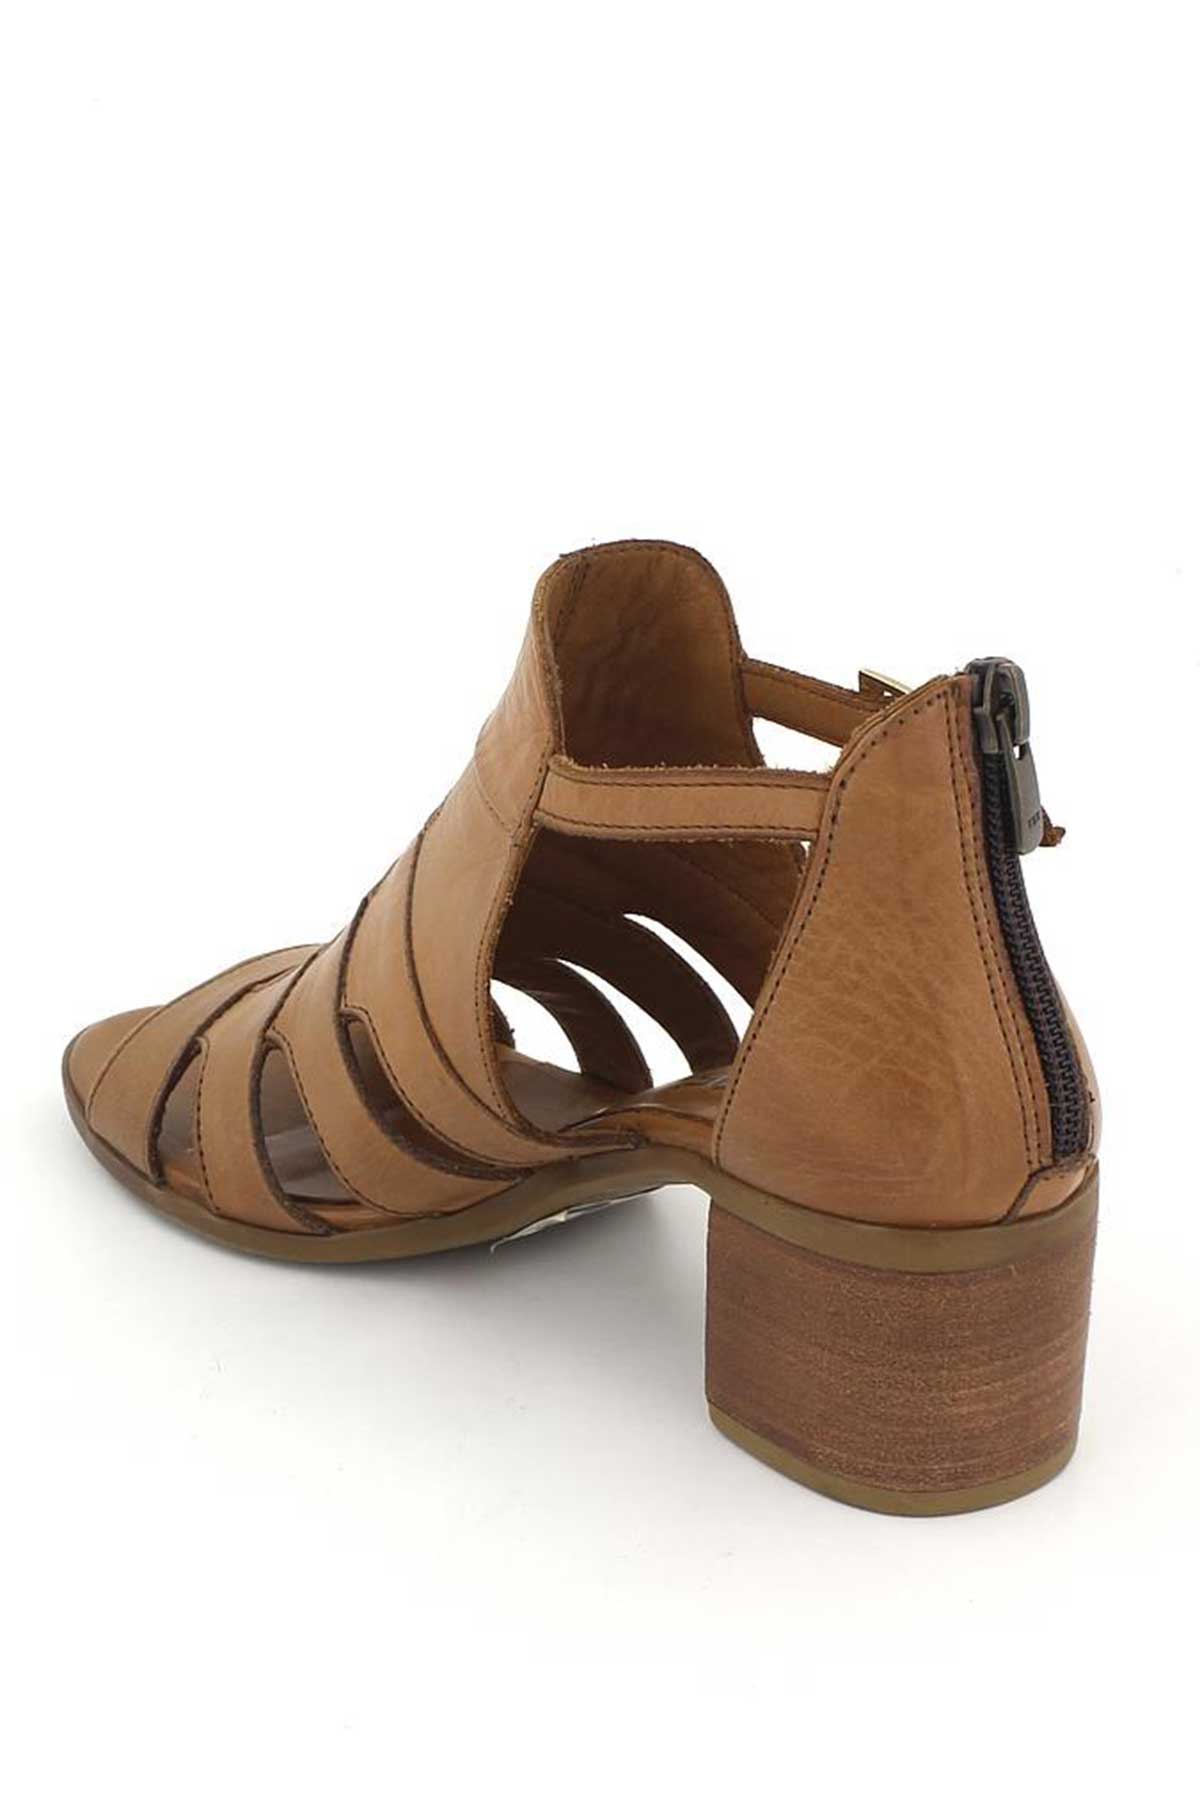 Kadın Topuklu Deri Sandalet Taba 1857211Y - Thumbnail